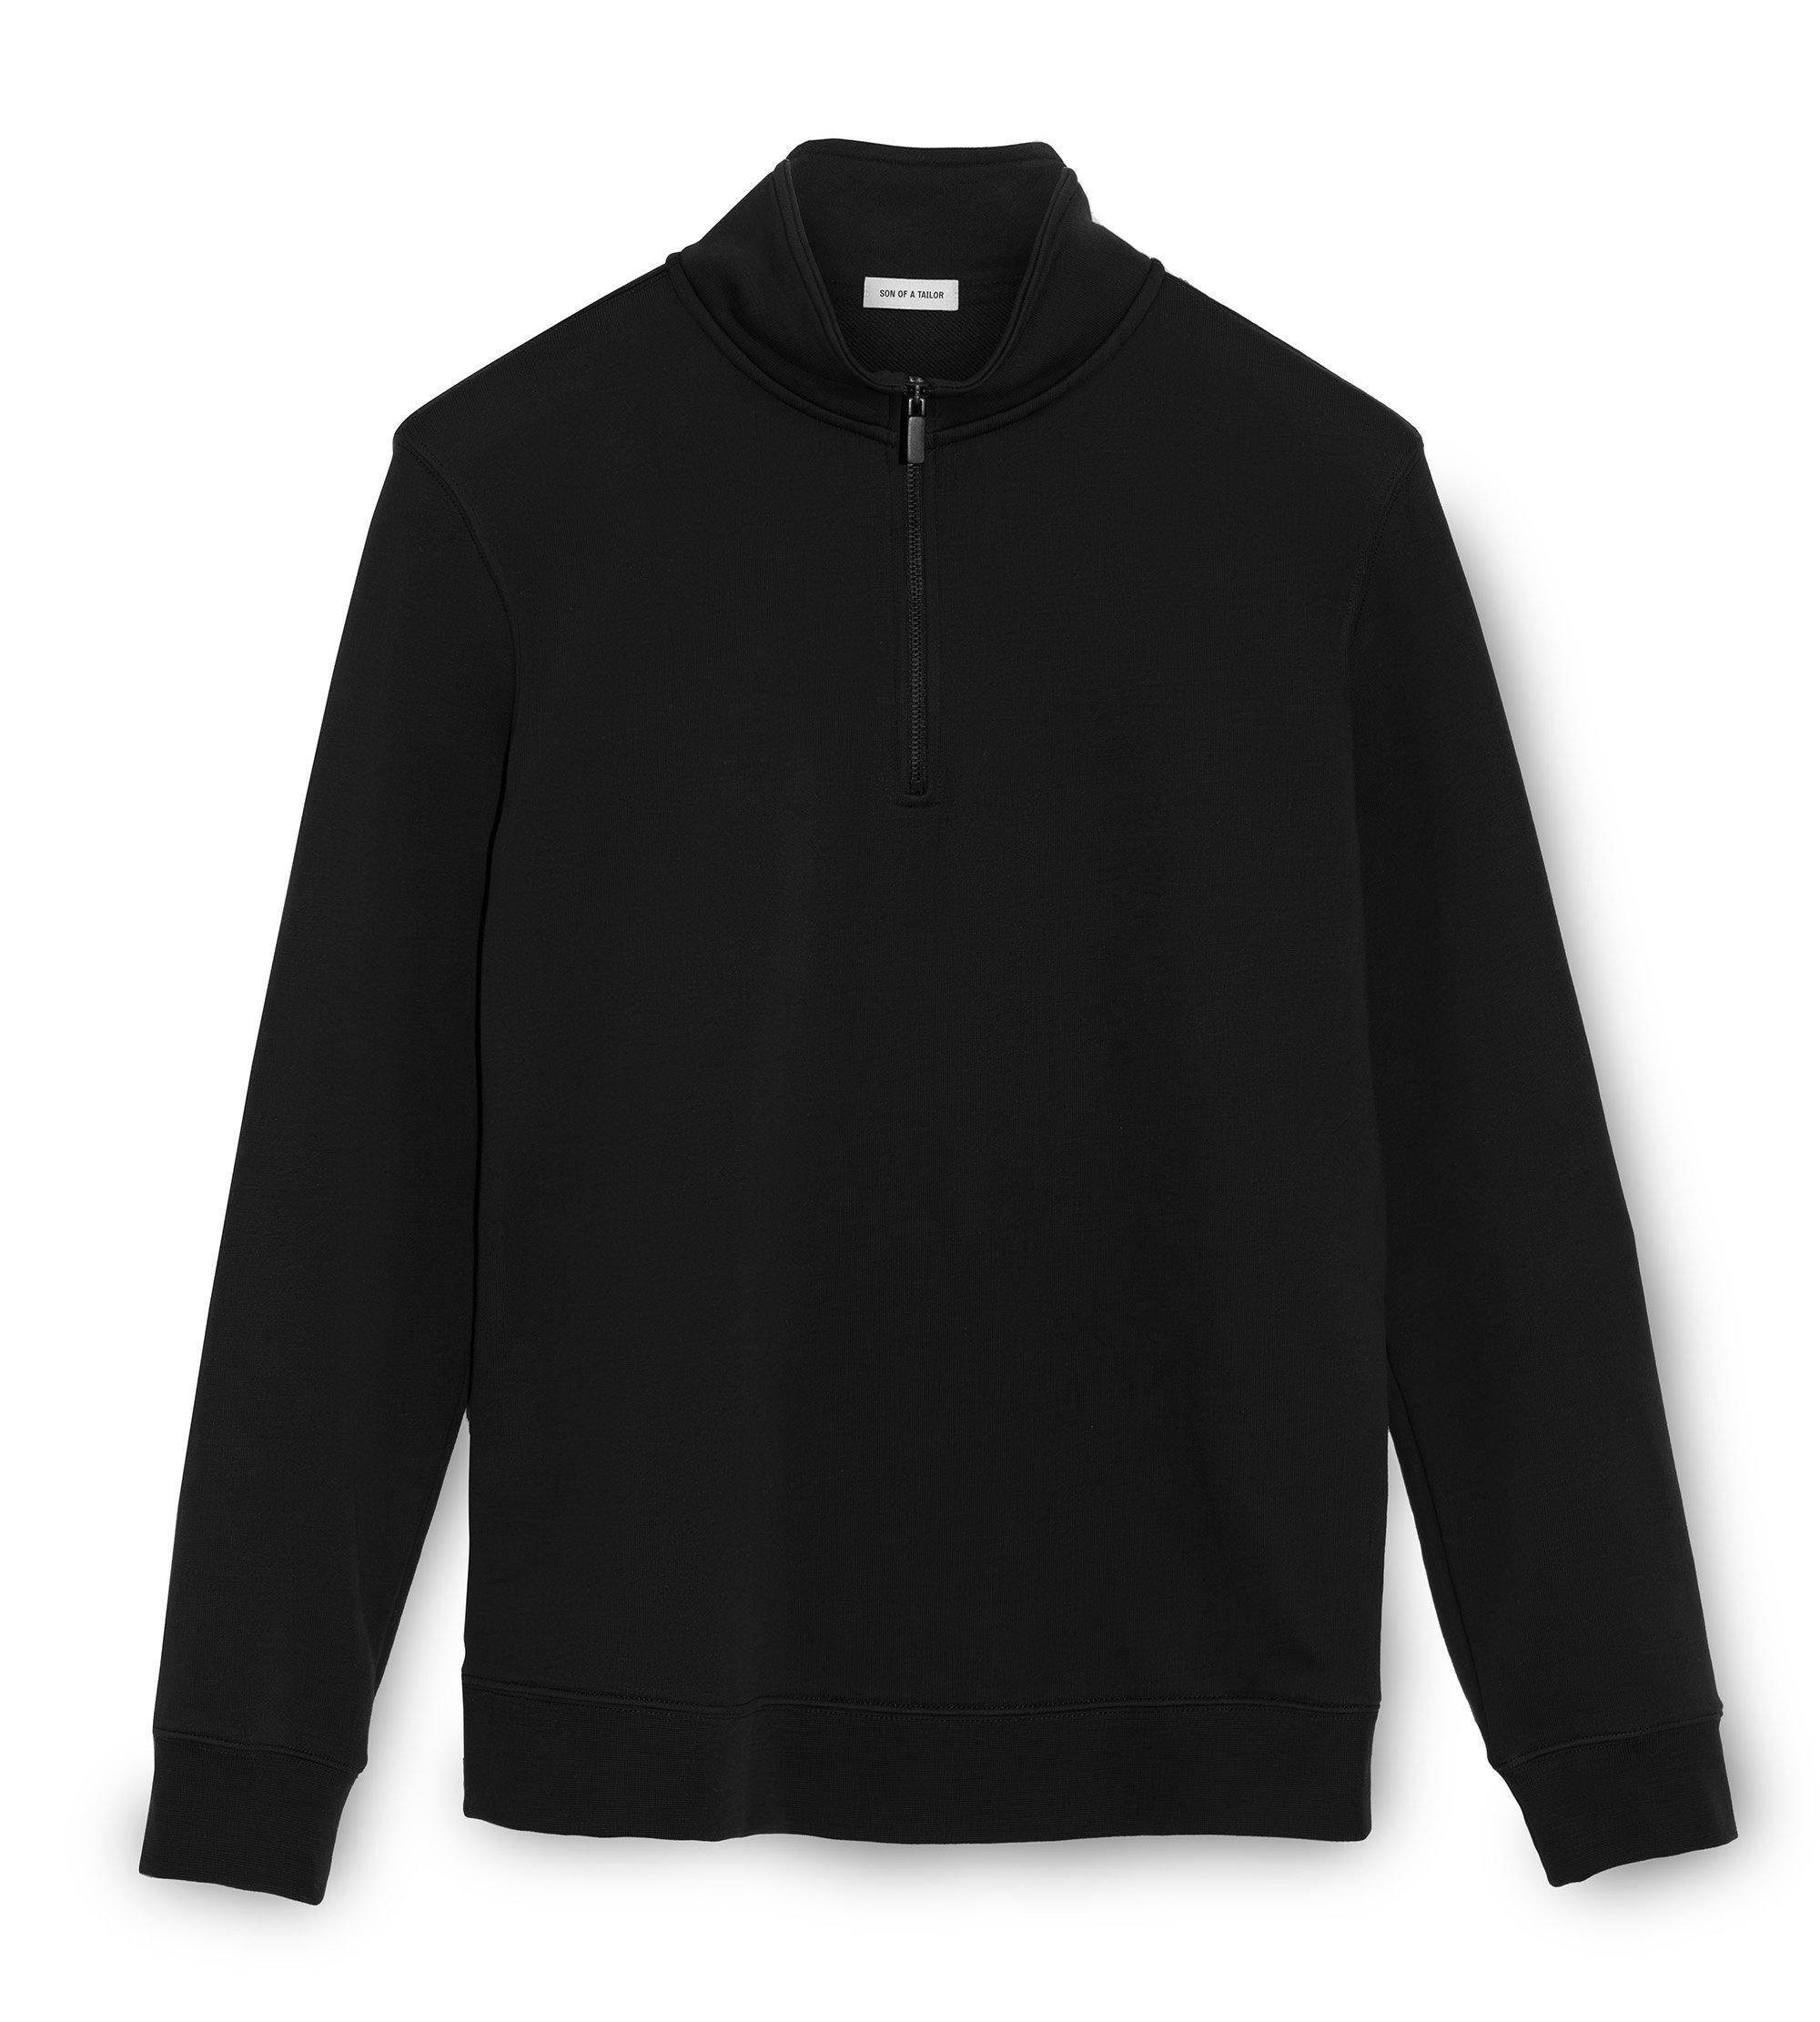 https://img.sonofatailor.com/images/customizer/product/half-zip-sweatshirt/Black.jpg